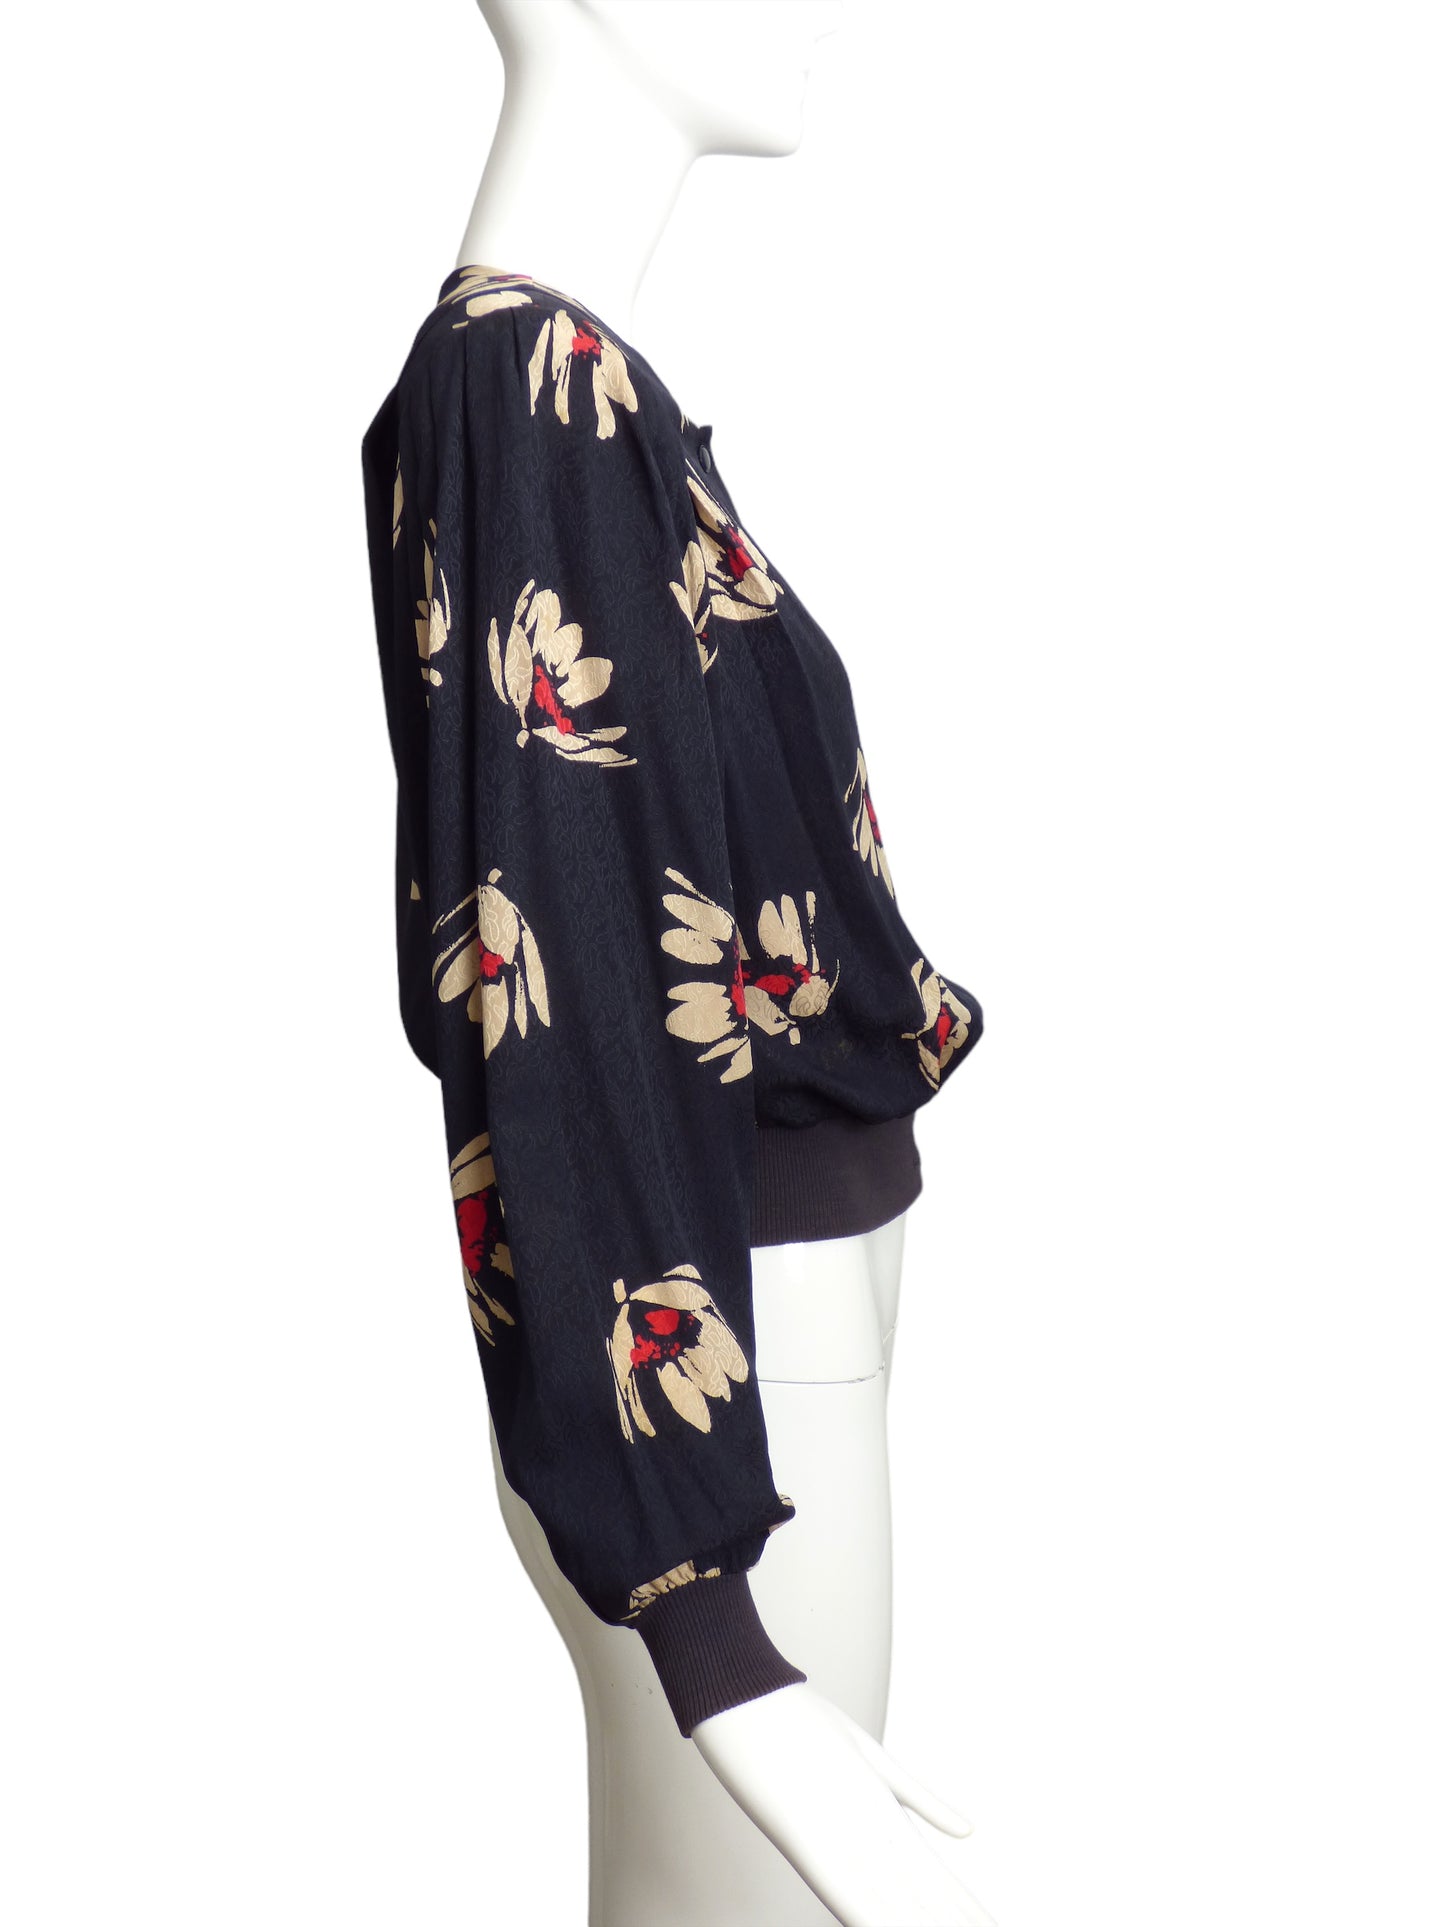 EMANUEL UNGARO- 1980s Floral Silk Jacquard Blouse, Size 8